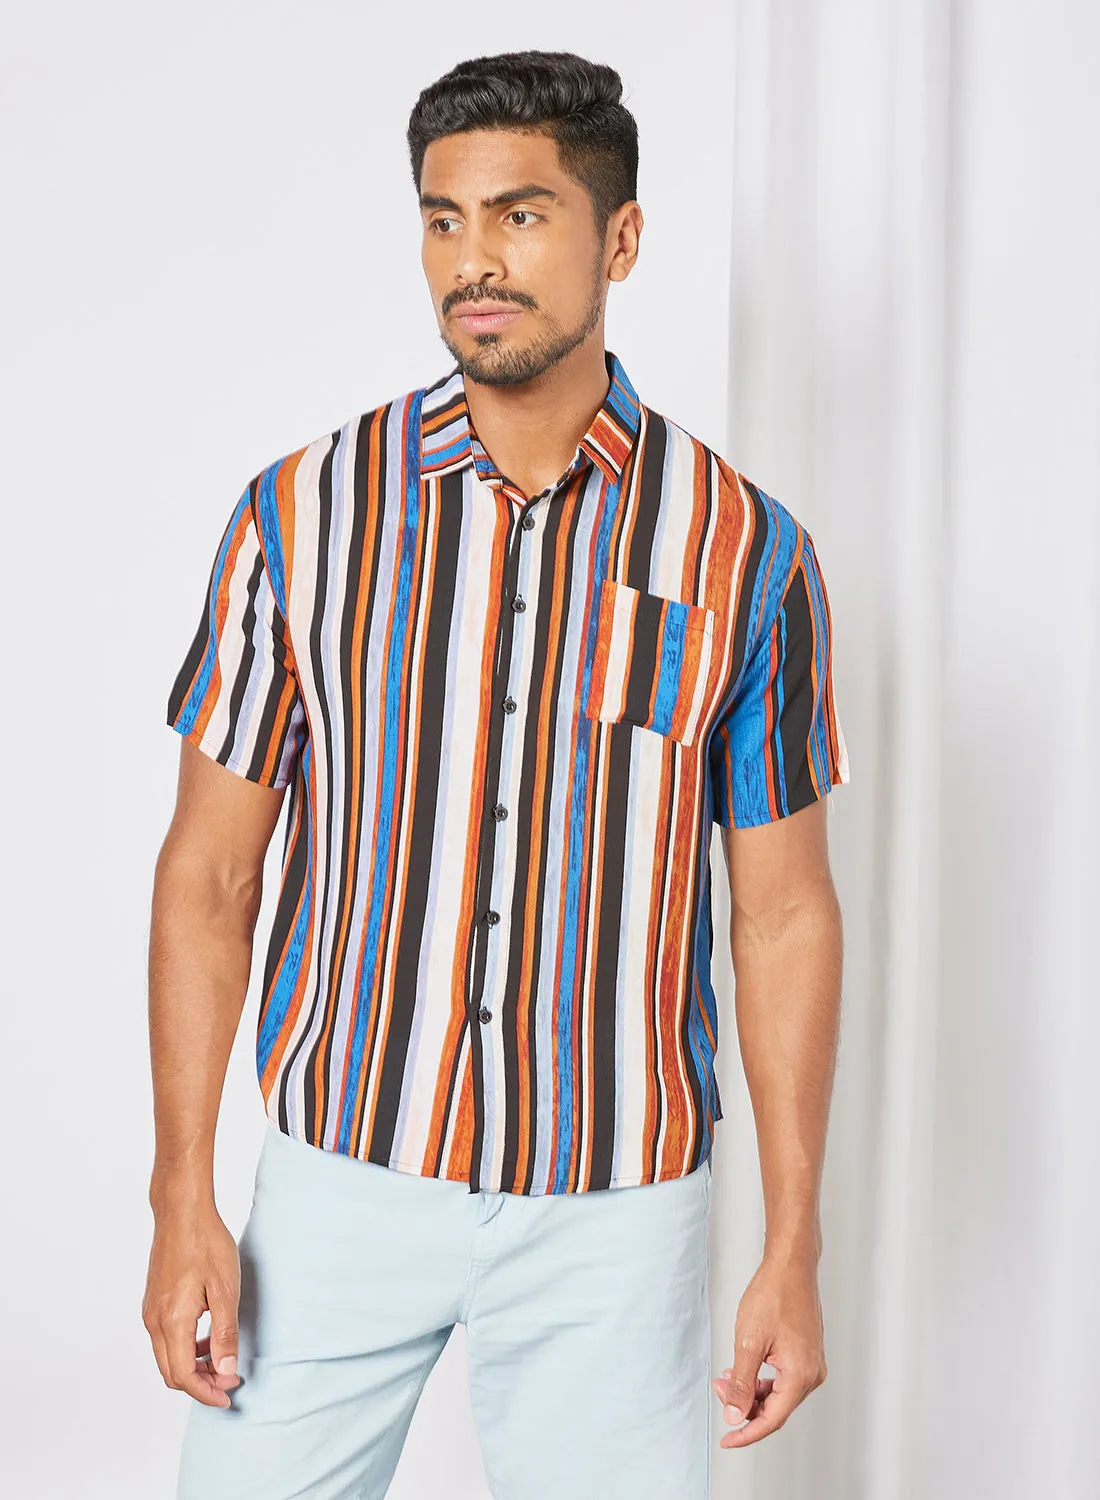 QUWA قميص كاجوال مخطط بأكمام قصيرة منسوج مع جيب أزرق / بني مقلم / أبيض